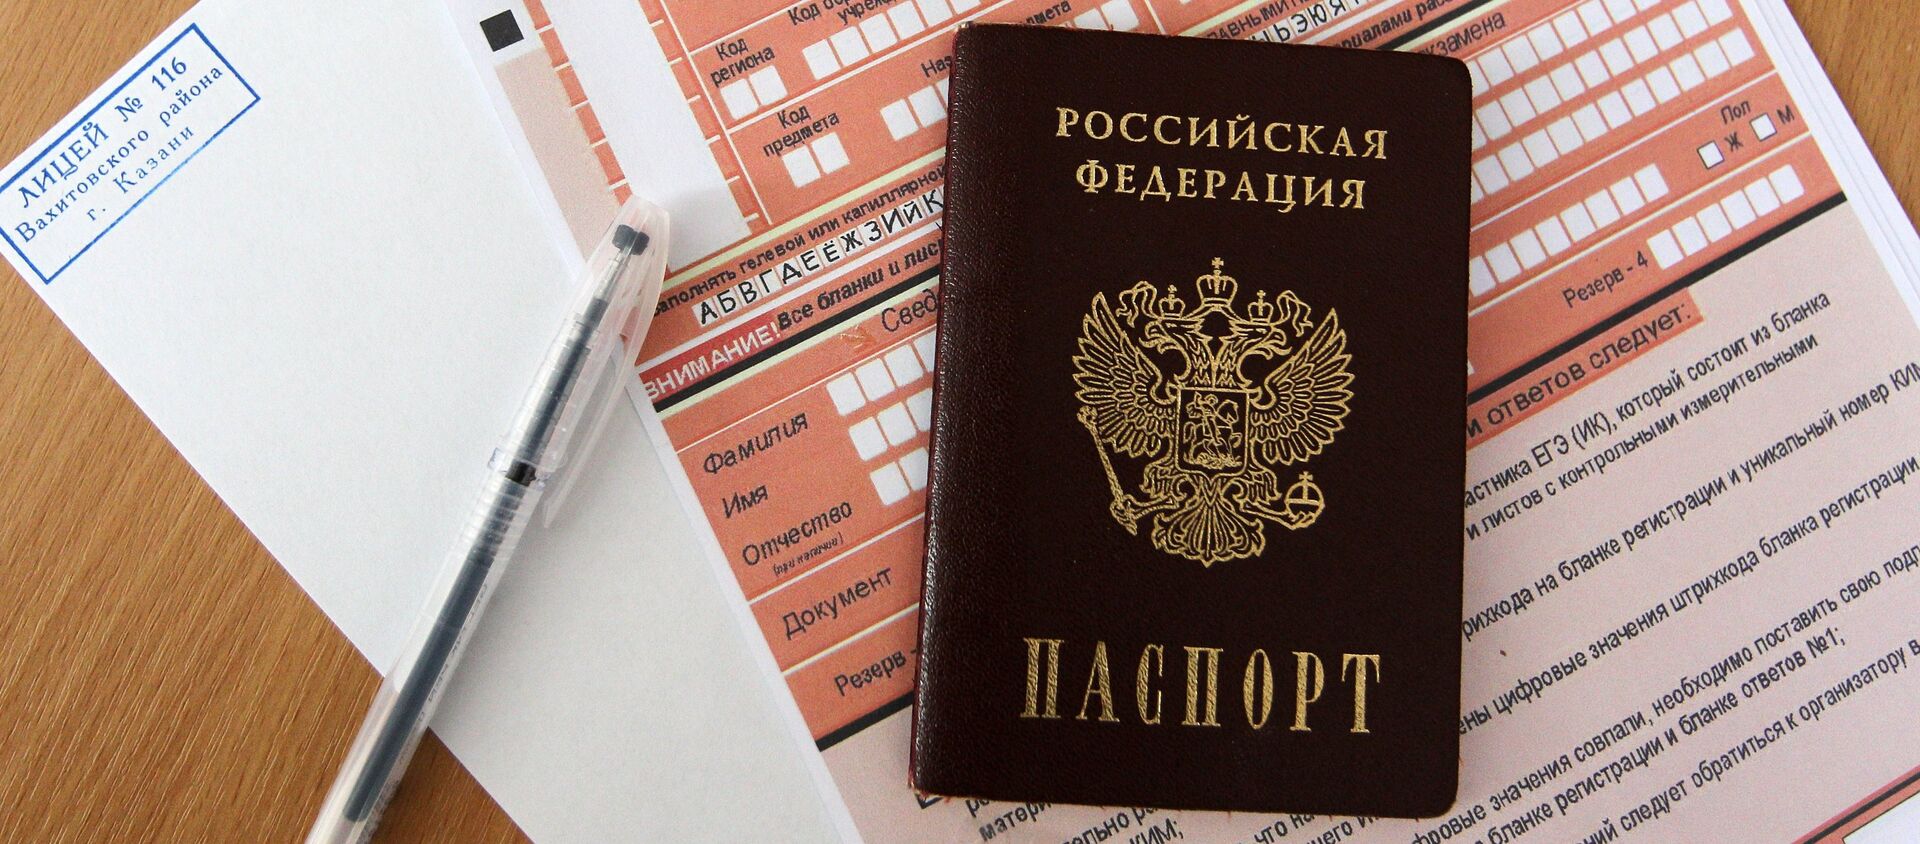 Паспорт гражданина Российской Федерации, фото из архива - Sputnik Молдова, 1920, 17.06.2020